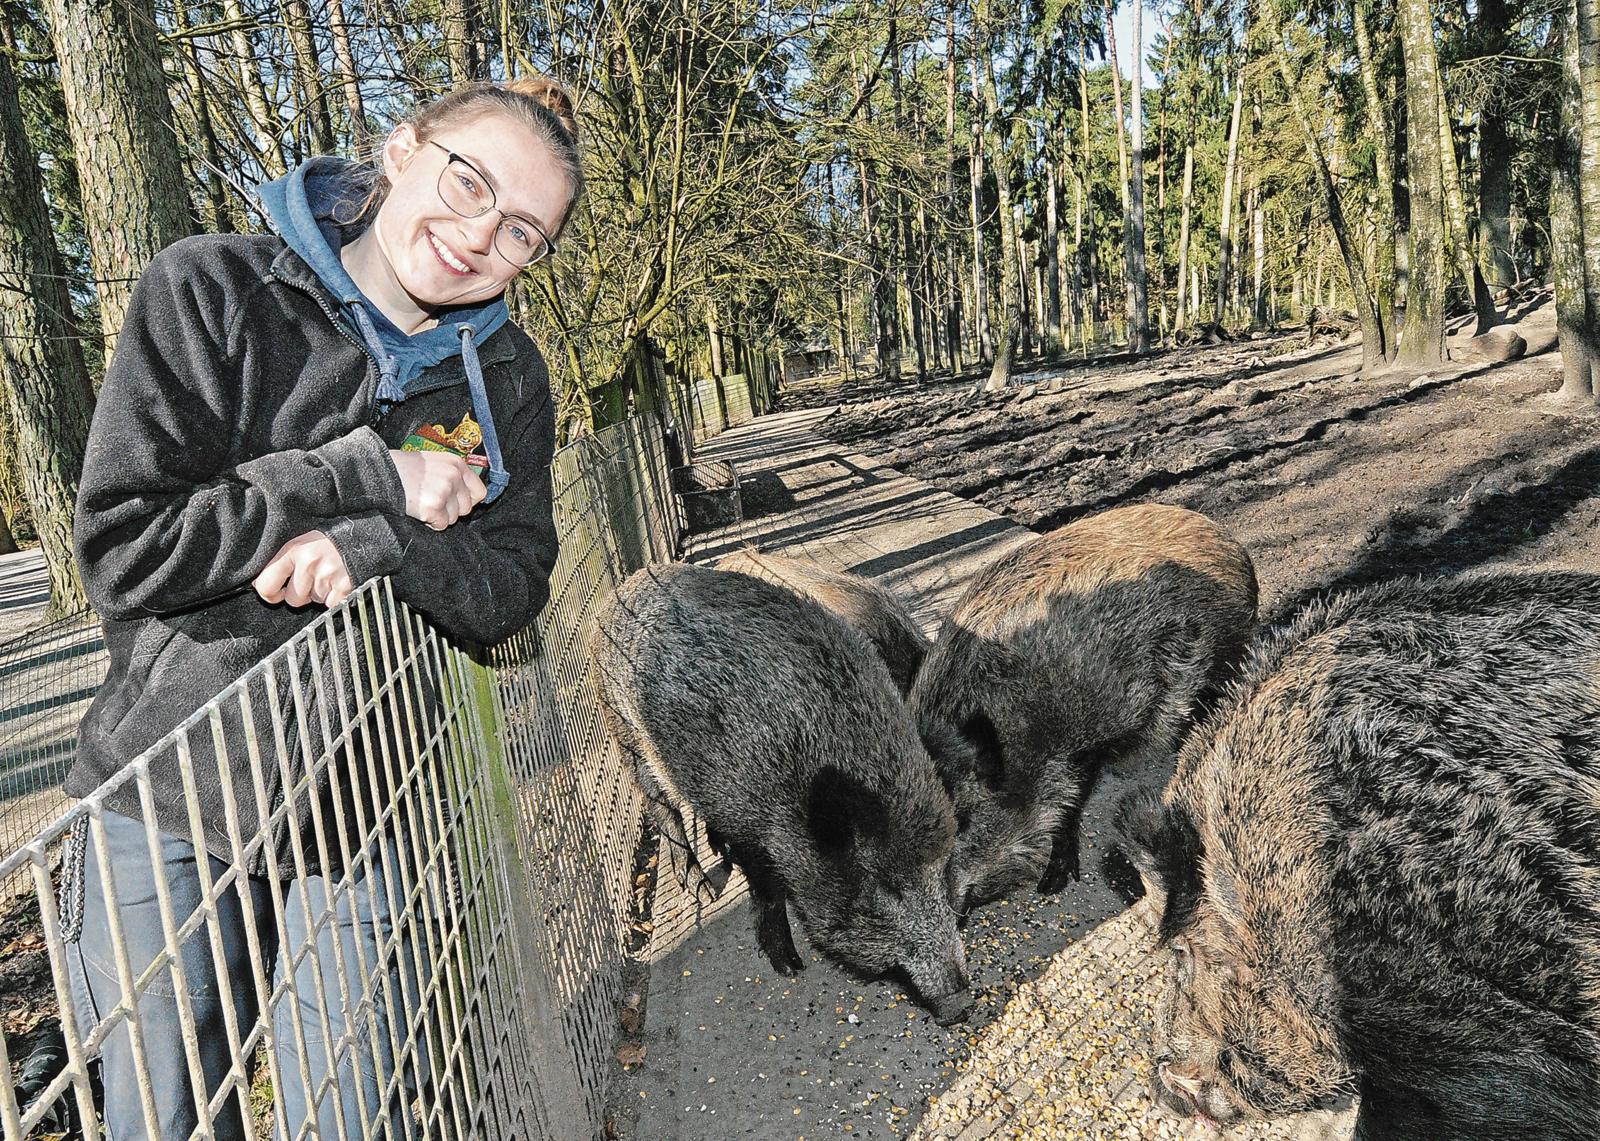 Tierpflegerin mit Wildschweinen